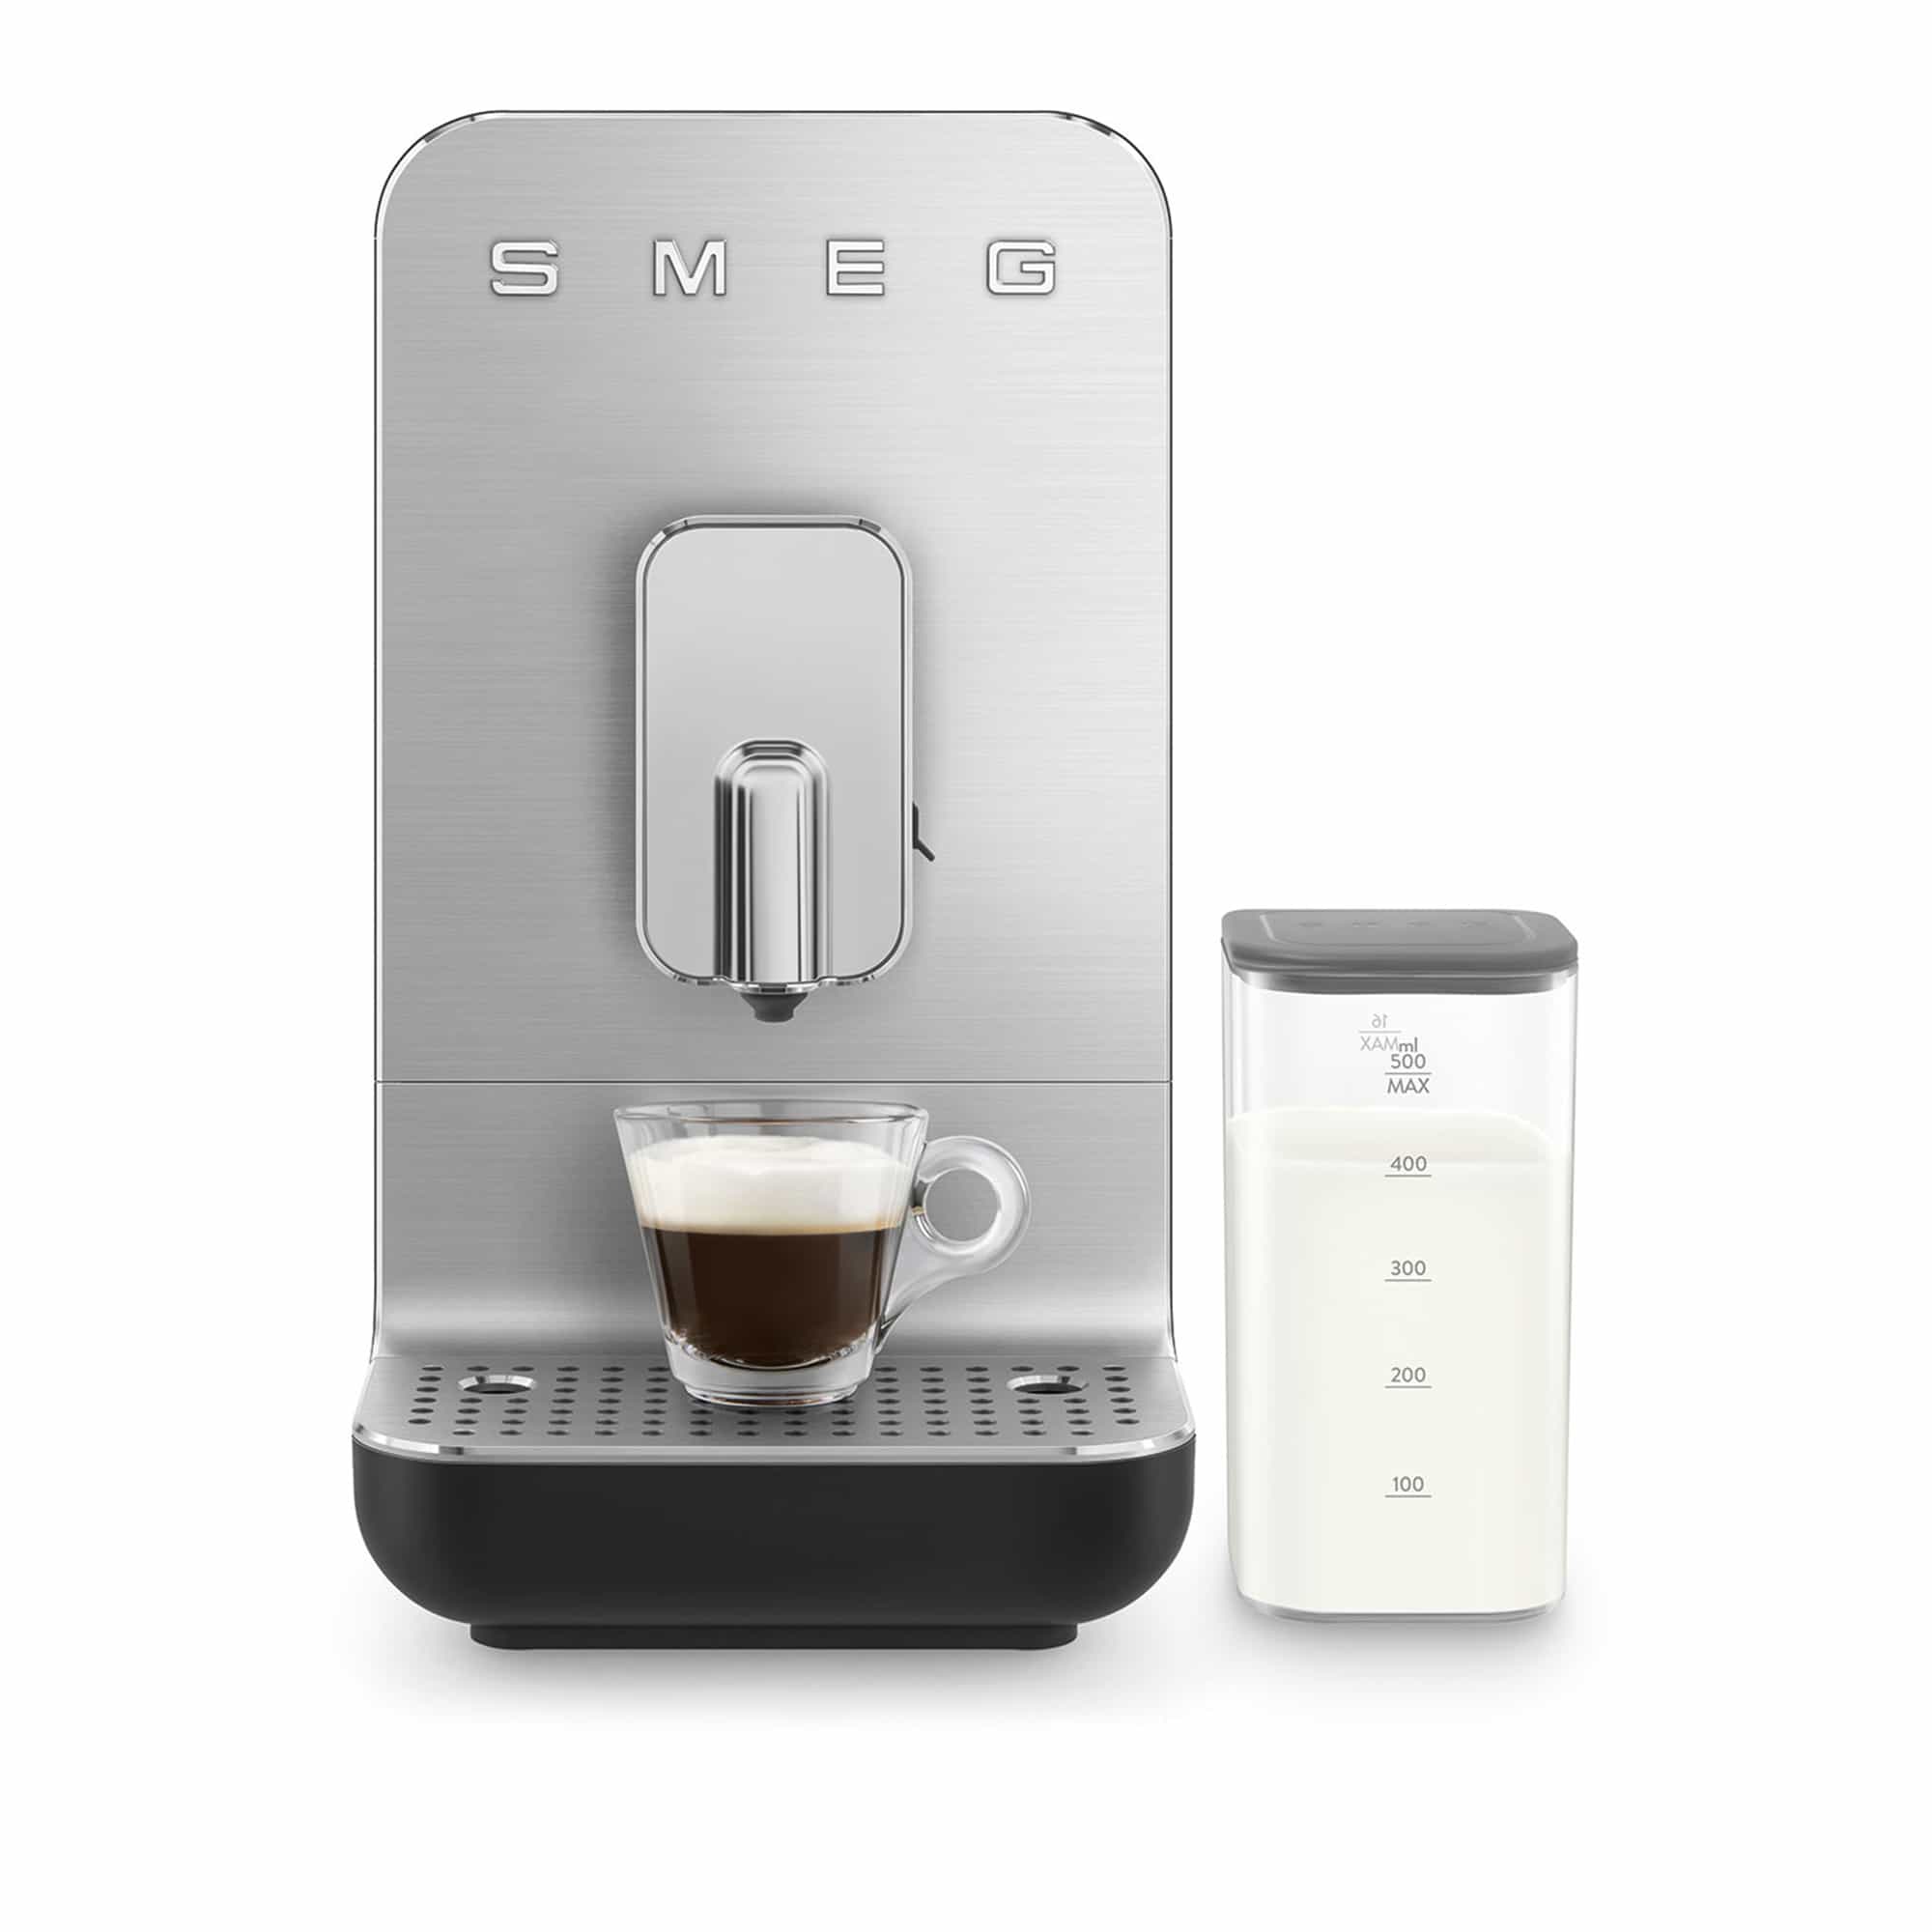 Smeg Automatic Coffee Machine With Milk System Black